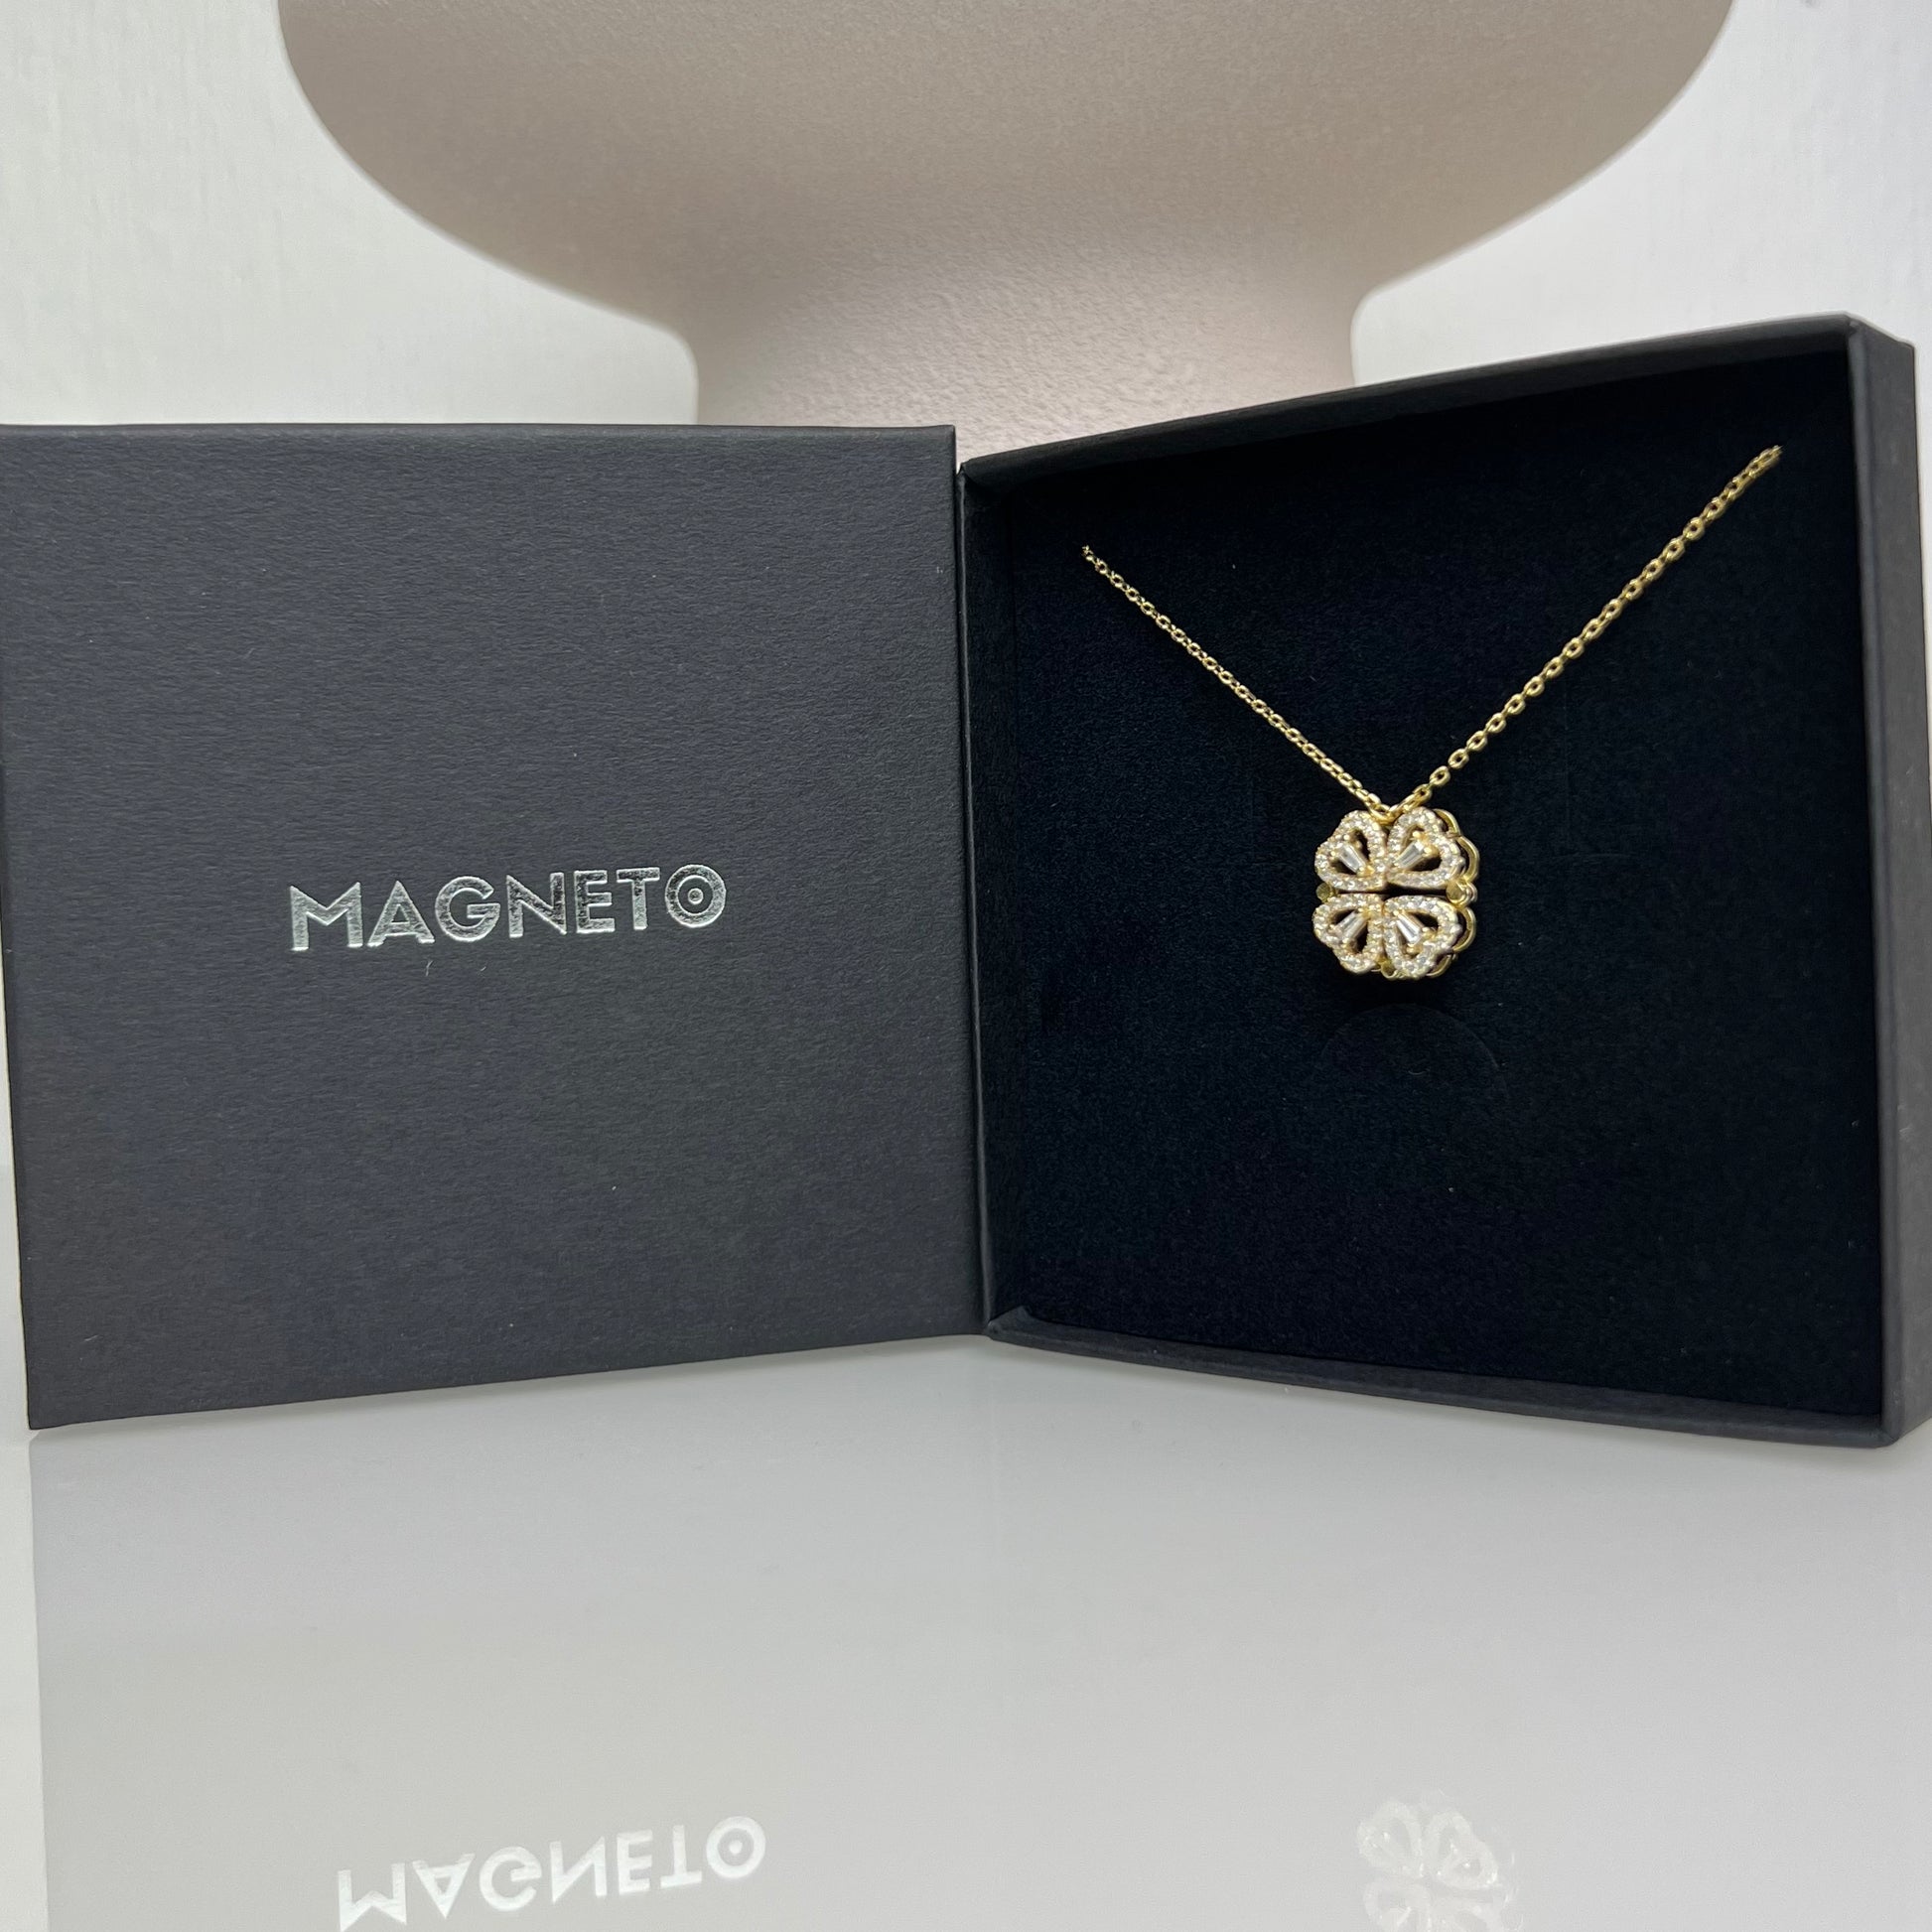    Magneto-Magnetische-Halskette-mit-Kleeblatt-und-Herz-Anhaenger-Gold-Box-Geschlossen